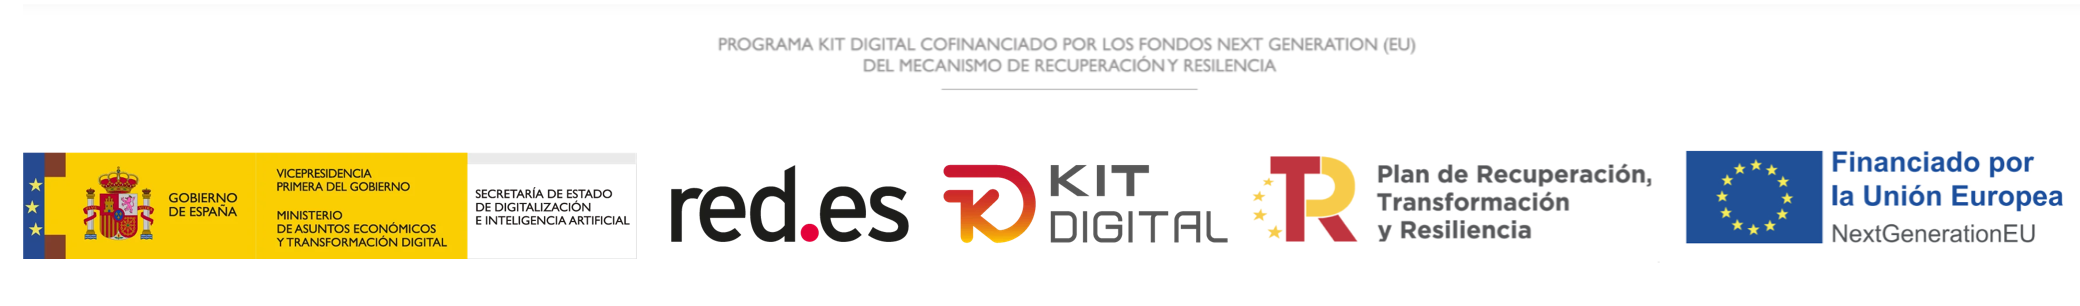 Logos de Gobierno de España, Kit Digital, Red.es y Financiación Europea